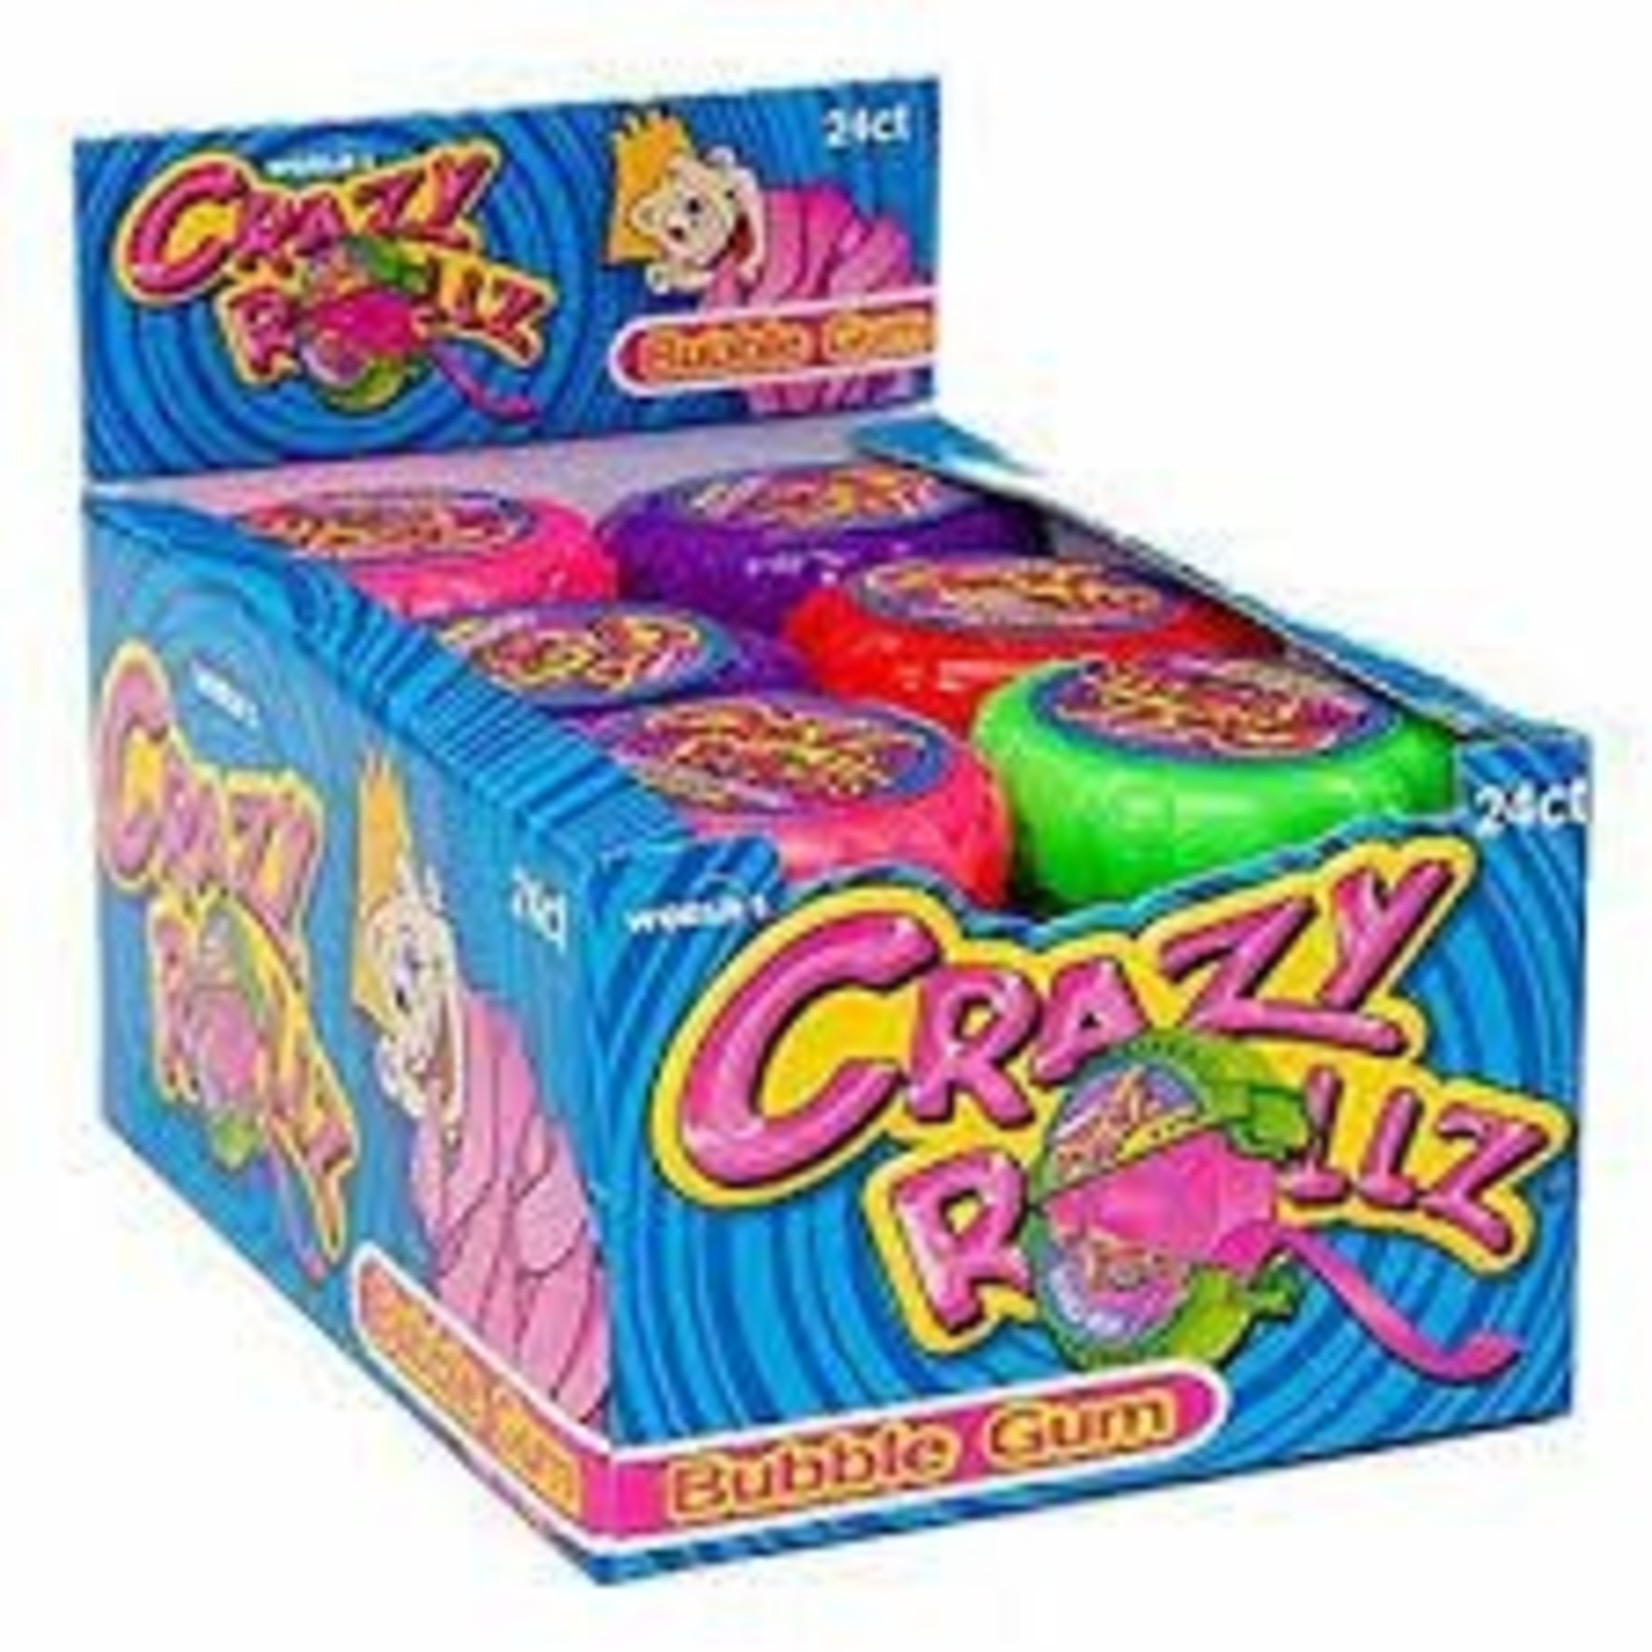 Crazy Rollz Bubble Gum 24ct